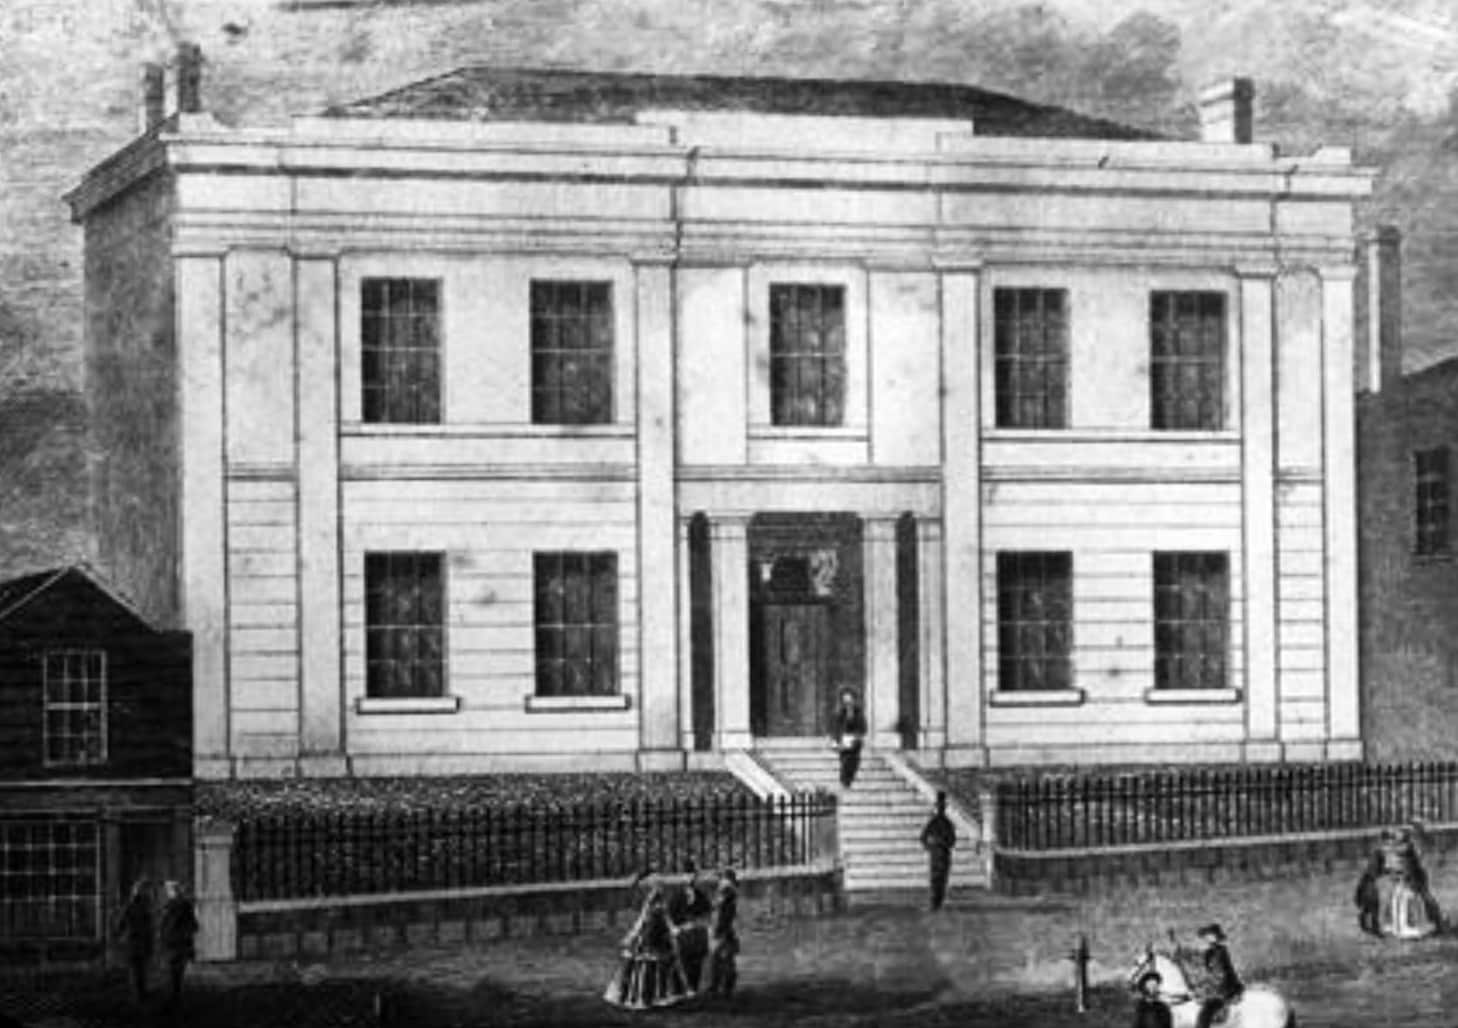 Mechanics' Institution, Melbourne, c. 1850